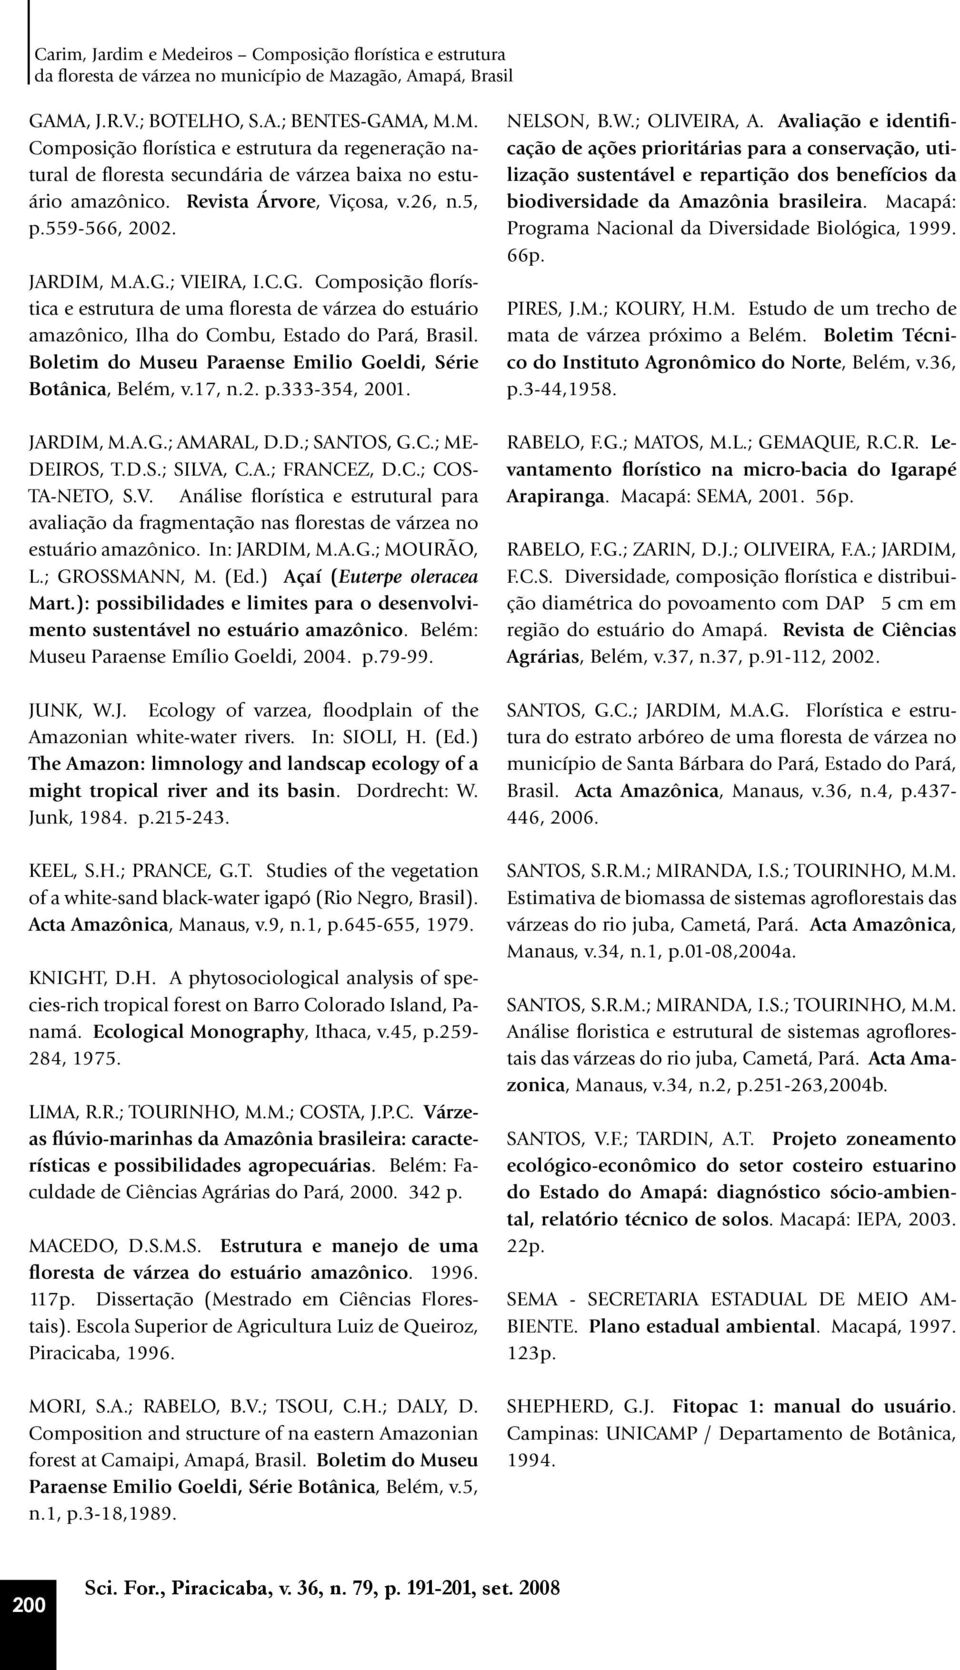 Boletim do Museu Paraense Emilio Goeldi, Série Botânica, Belém, v.17, n.2. p.333-354, 2001. JARDIM, M.A.G.; AMARAL, D.D.; SANTOS, G.C.; ME- DEIROS, T.D.S.; SILVA, C.A.; FRANCEZ, D.C.; COS- TA-NETO, S.